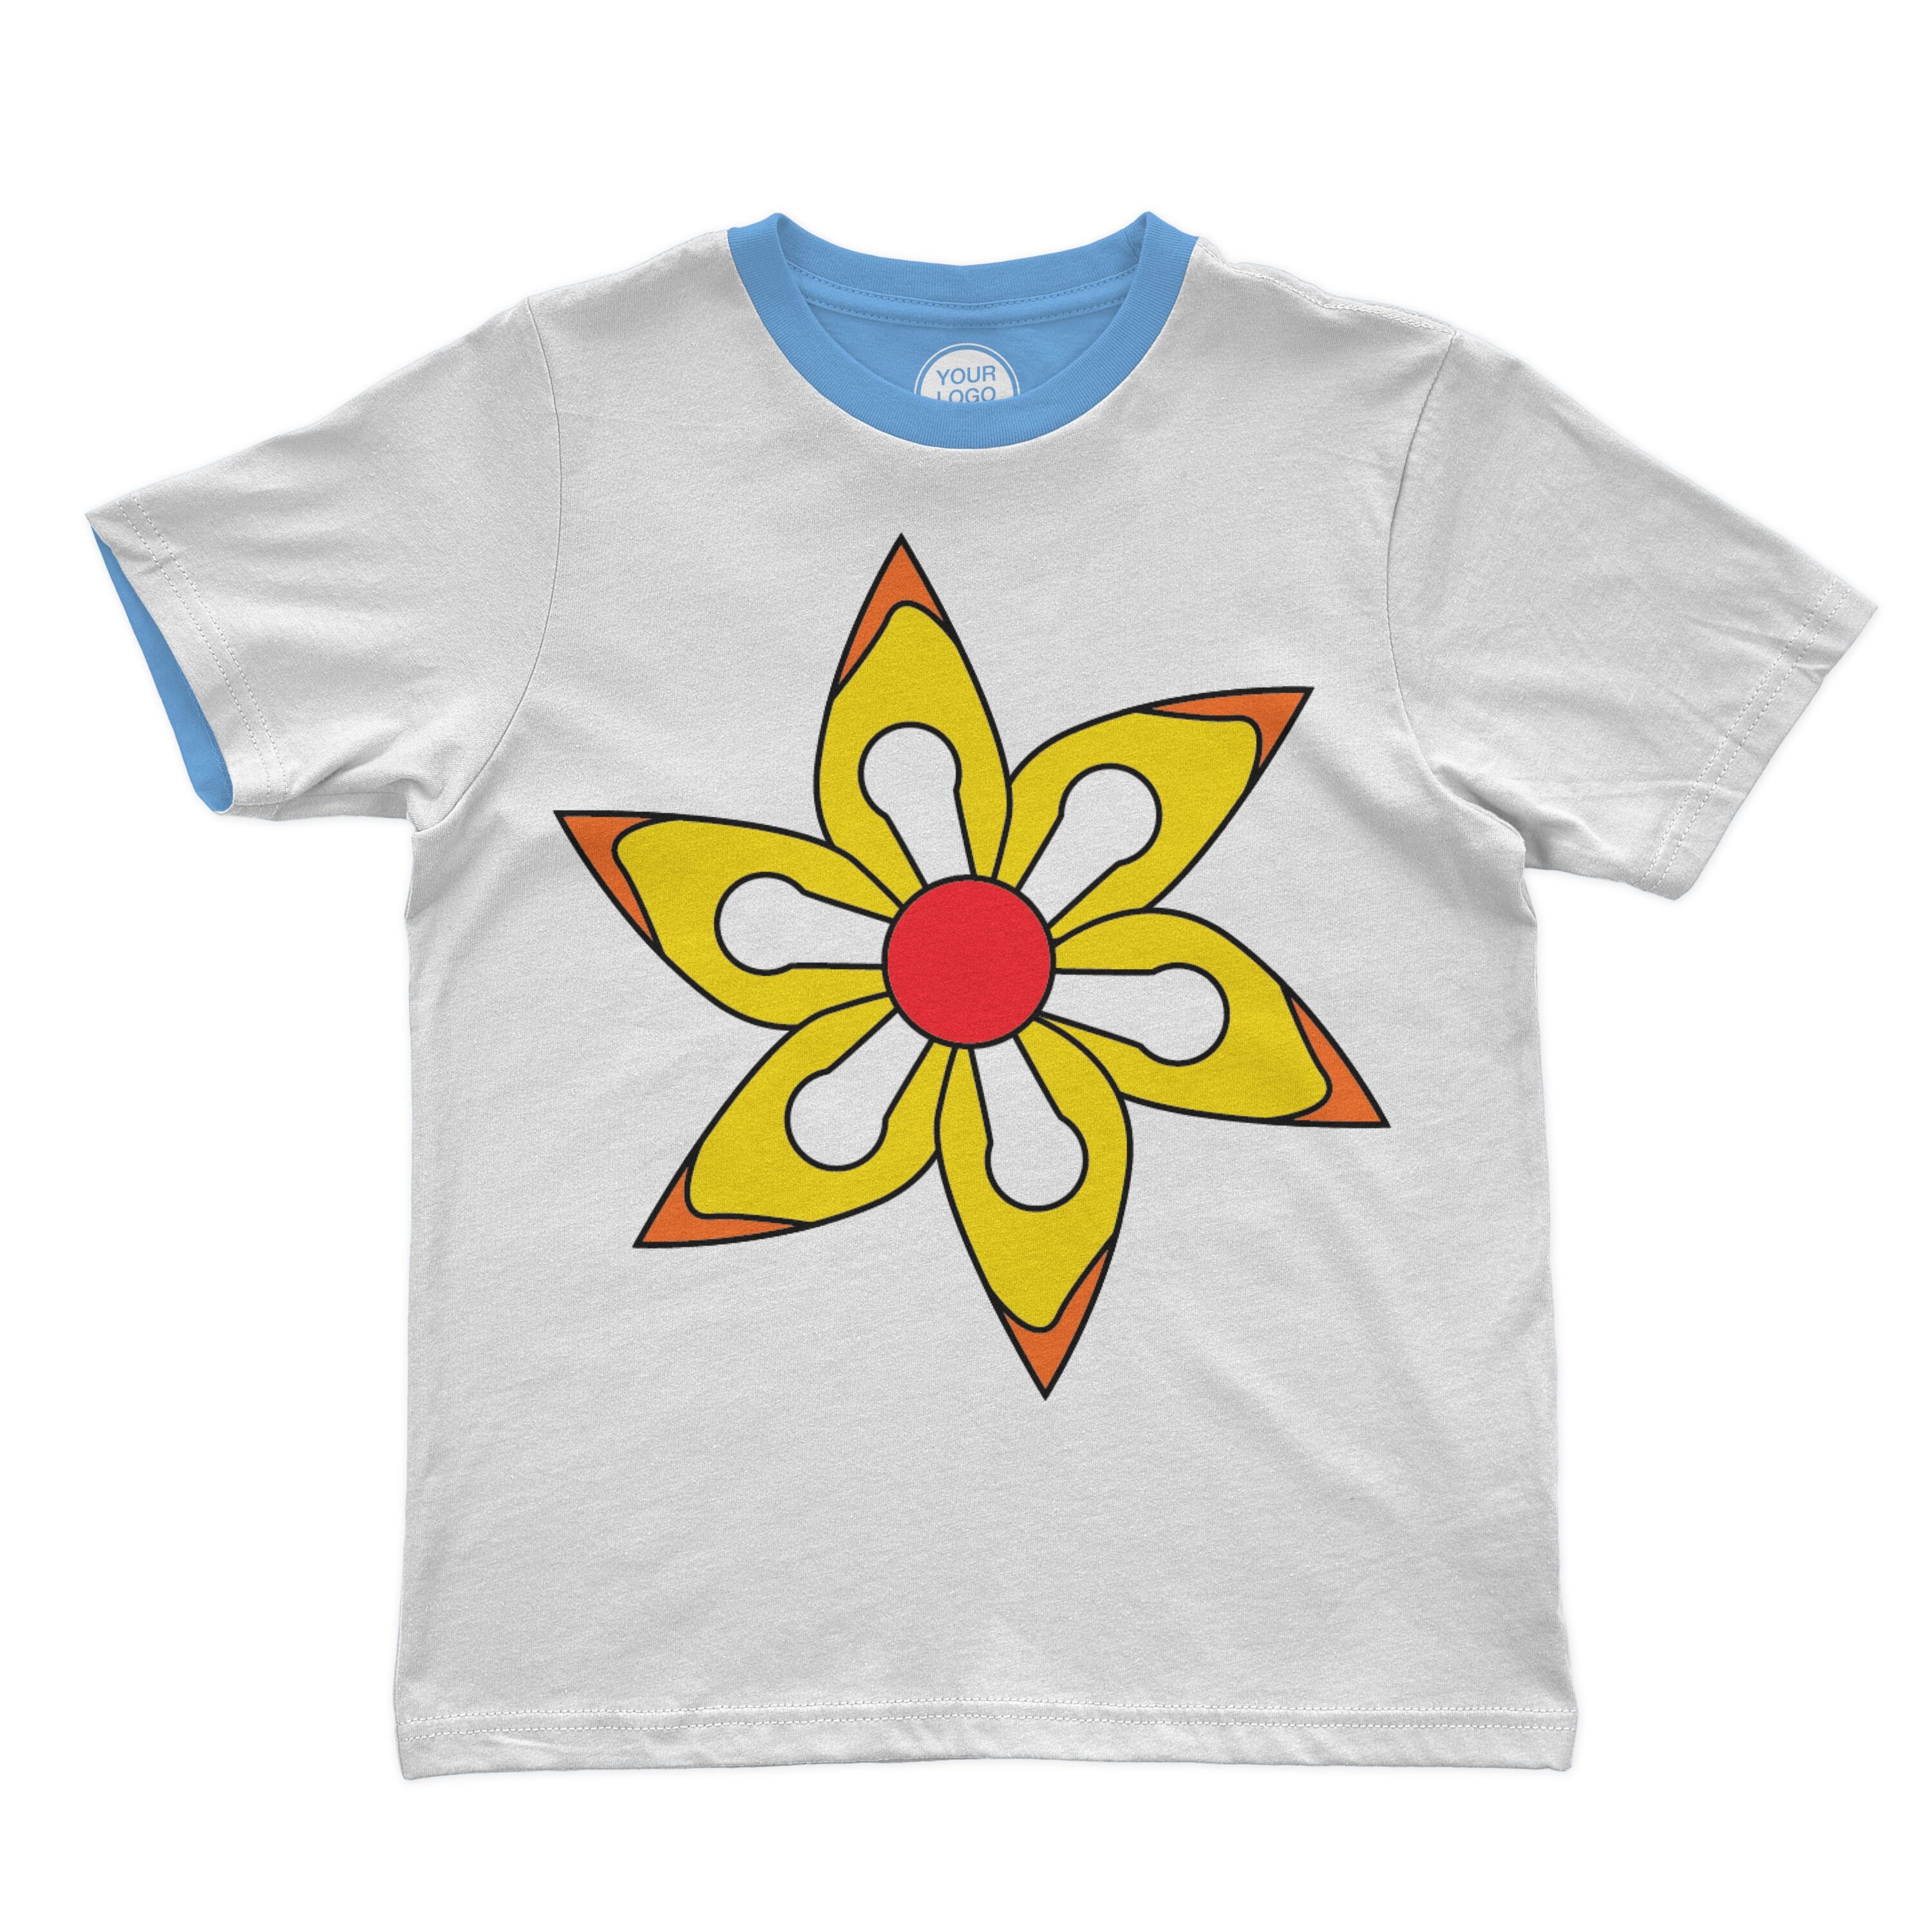 Hippie yellow flower with orange little elements on t-shirt design.